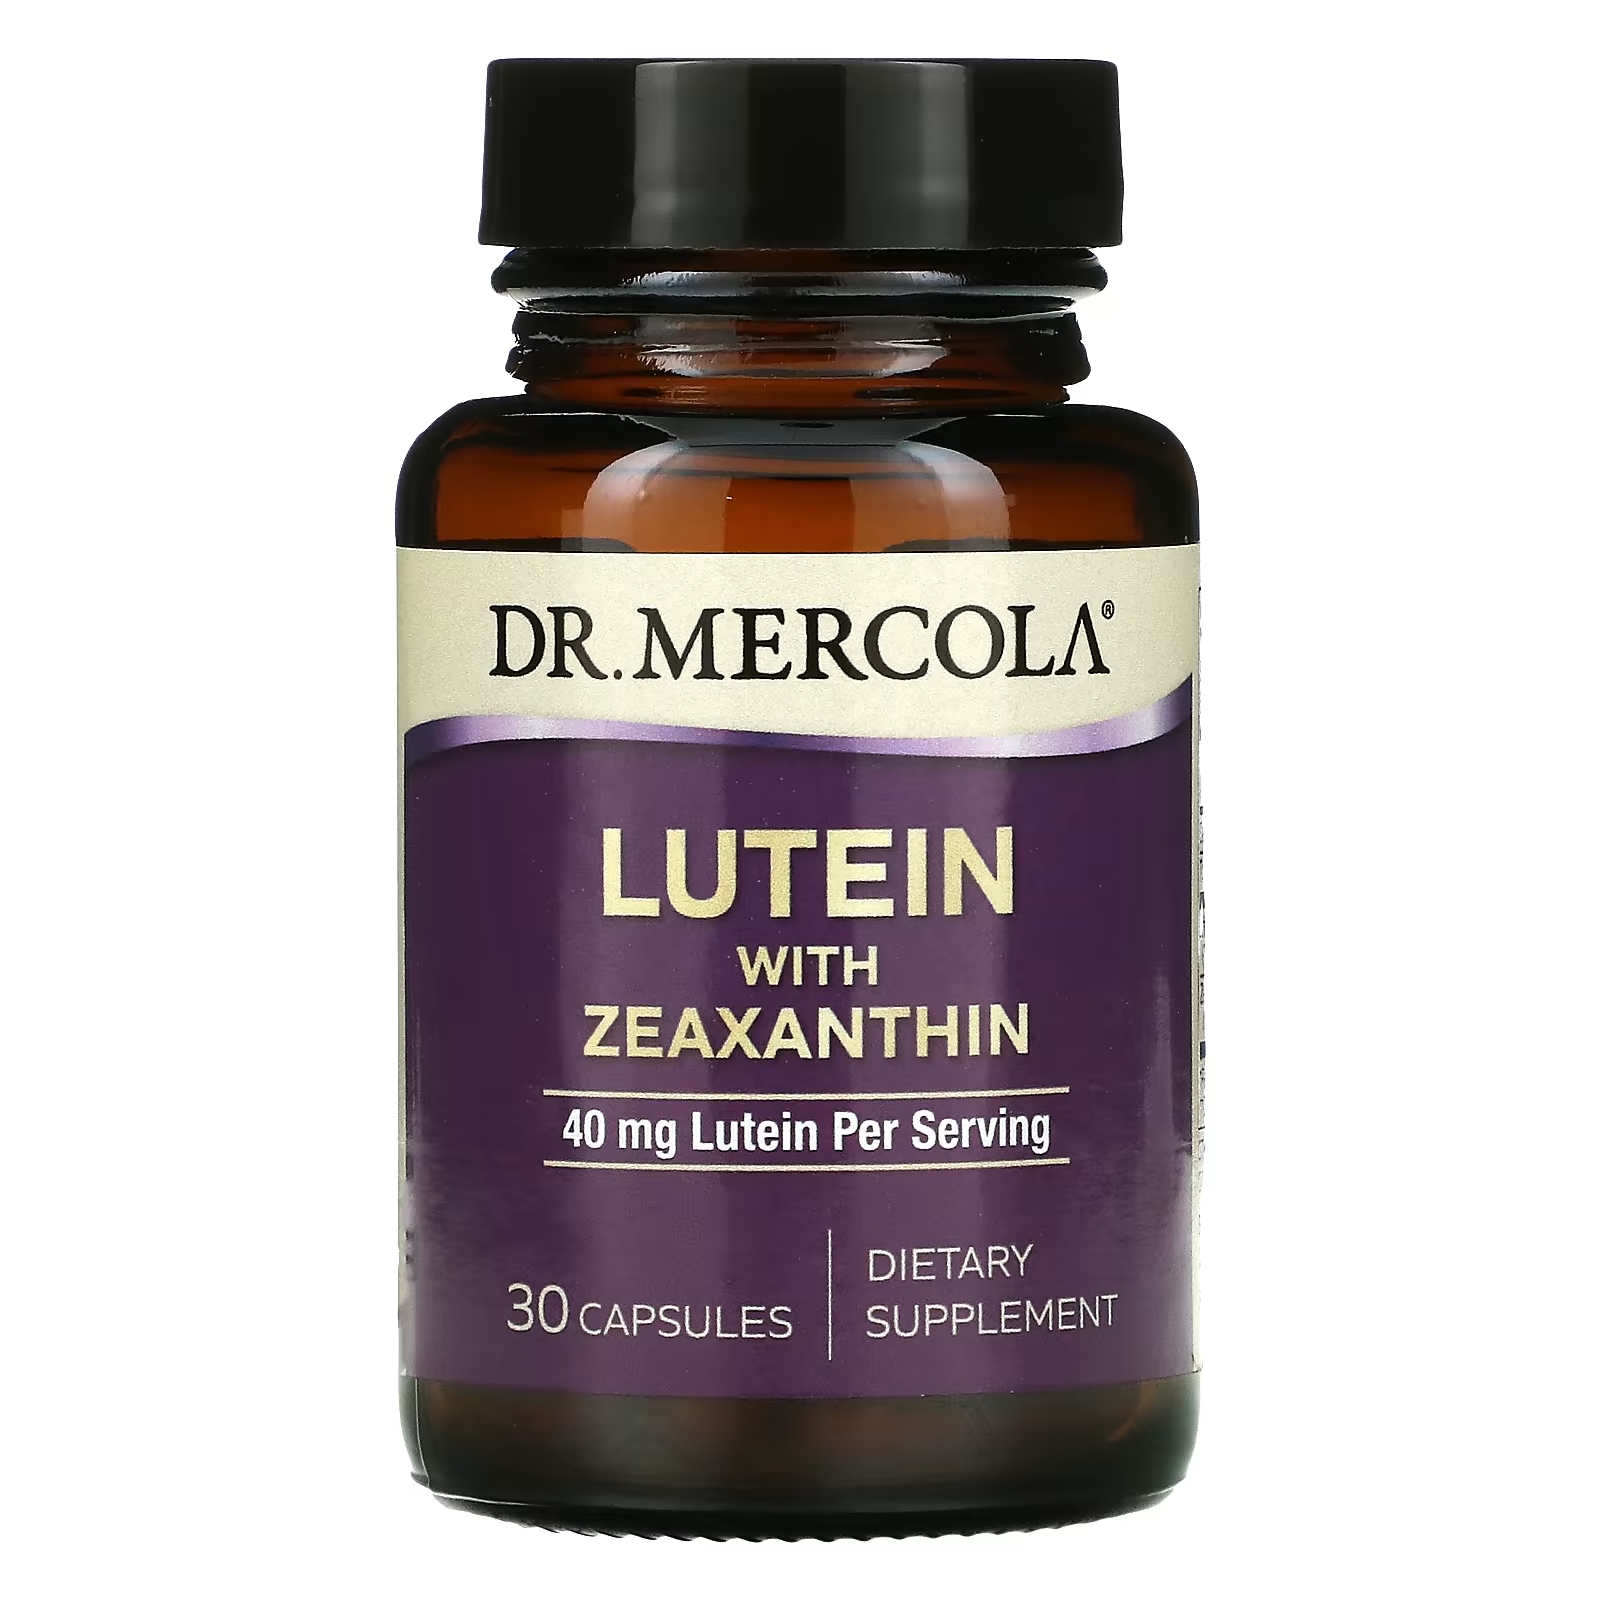 Dr. Mercola Лютеин с зеаксантином 40 мг, 30 капсул dr mercola лютеин с зеаксантином 40 мг 30 капсул